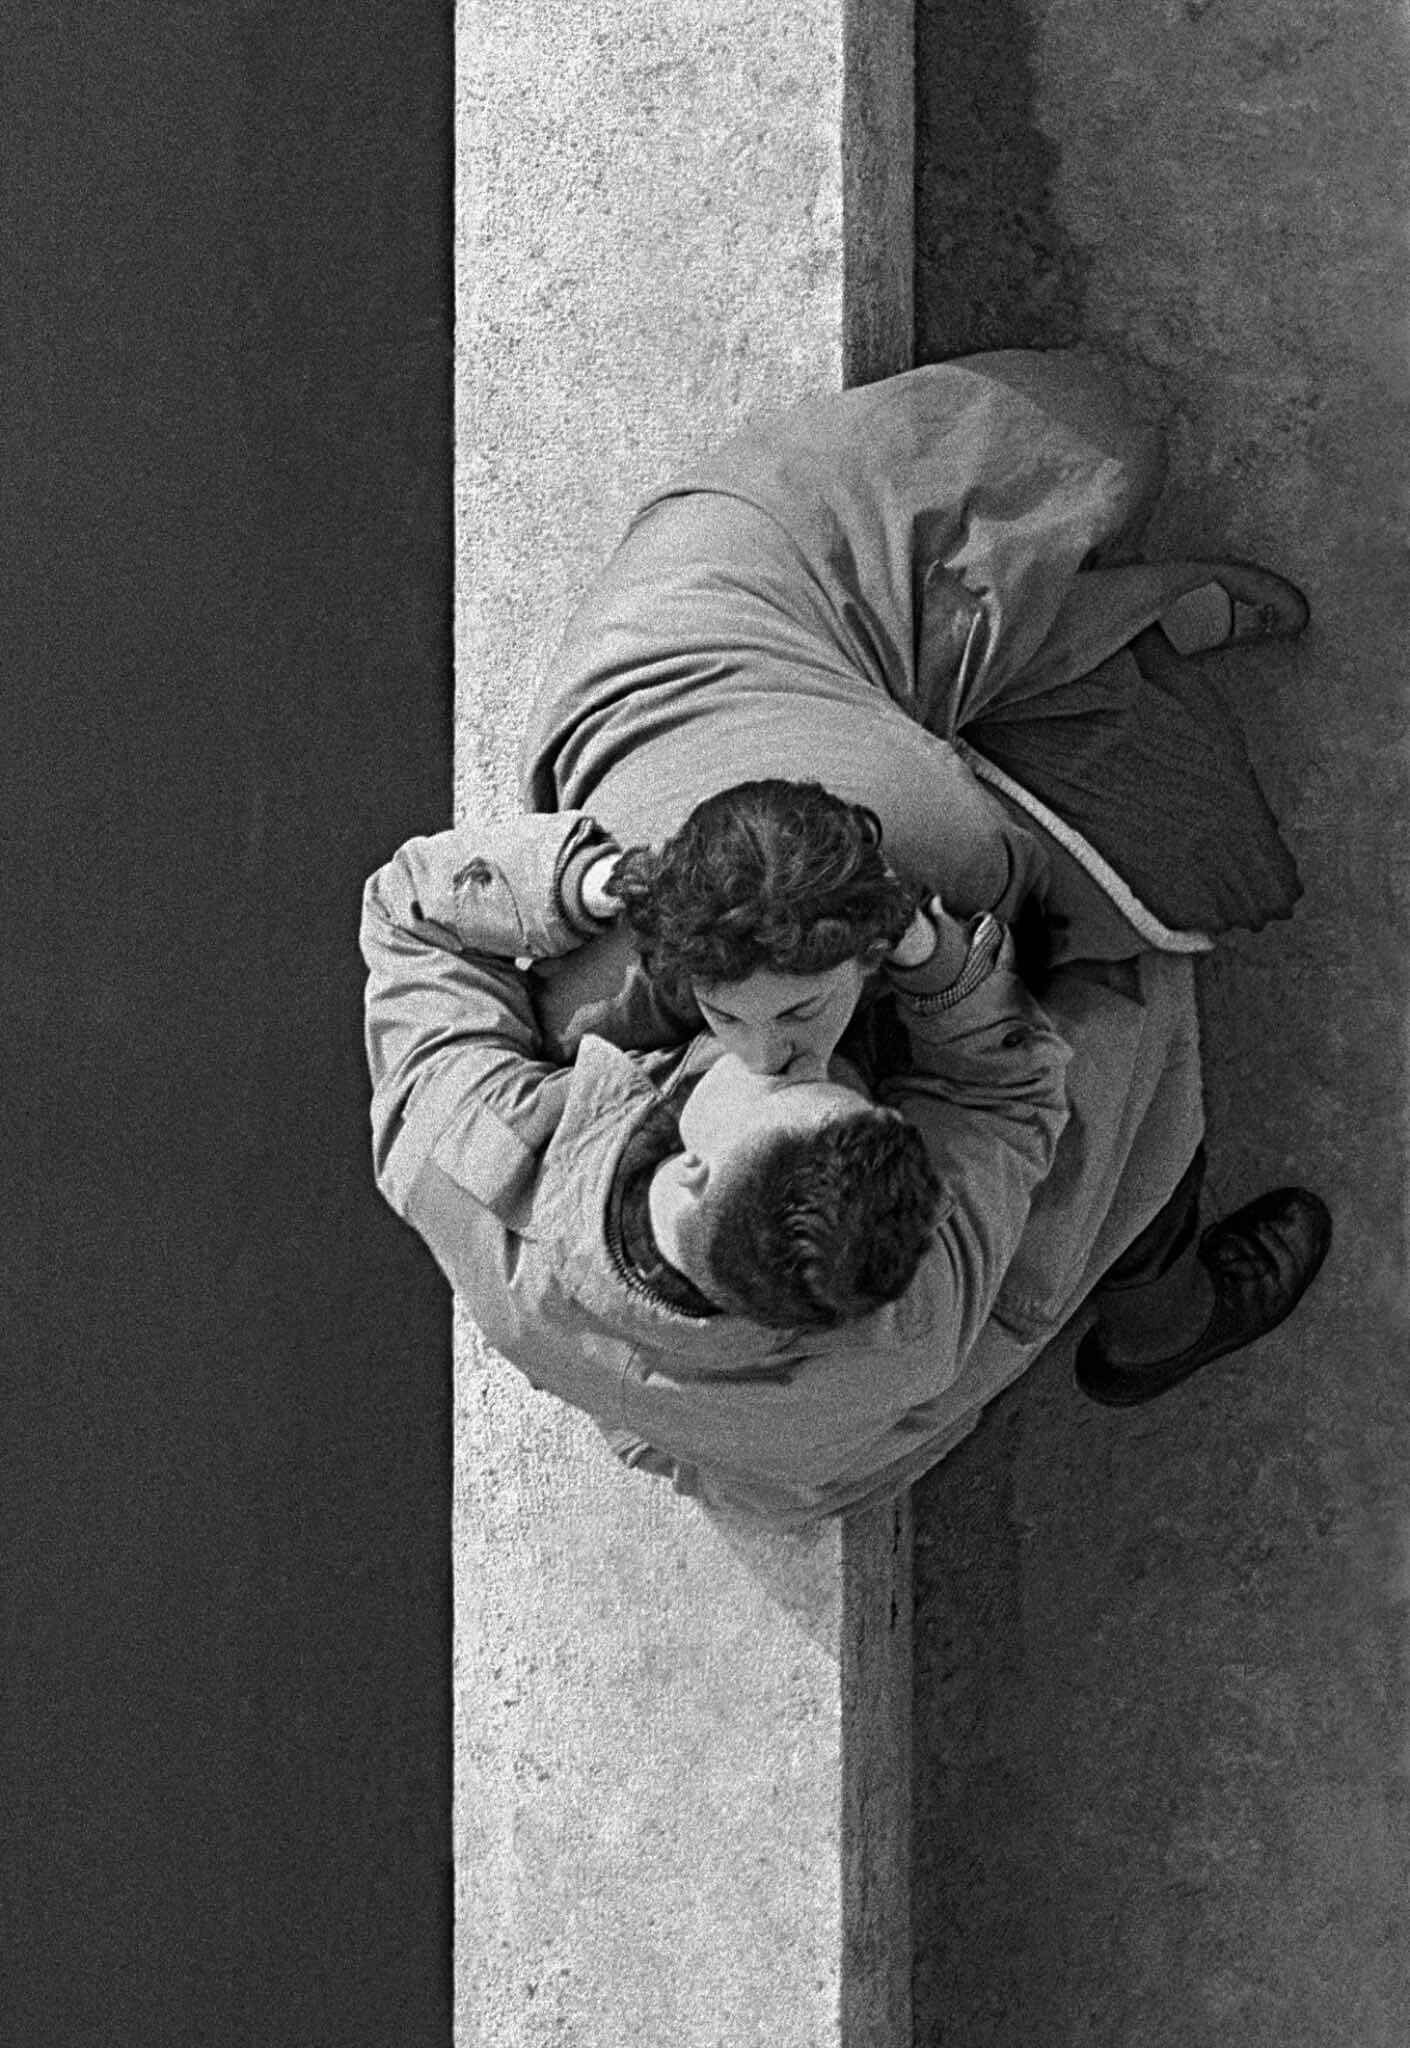 Париж, набережная Лувра, пара, 1956 год. Фотограф Франк Хорват